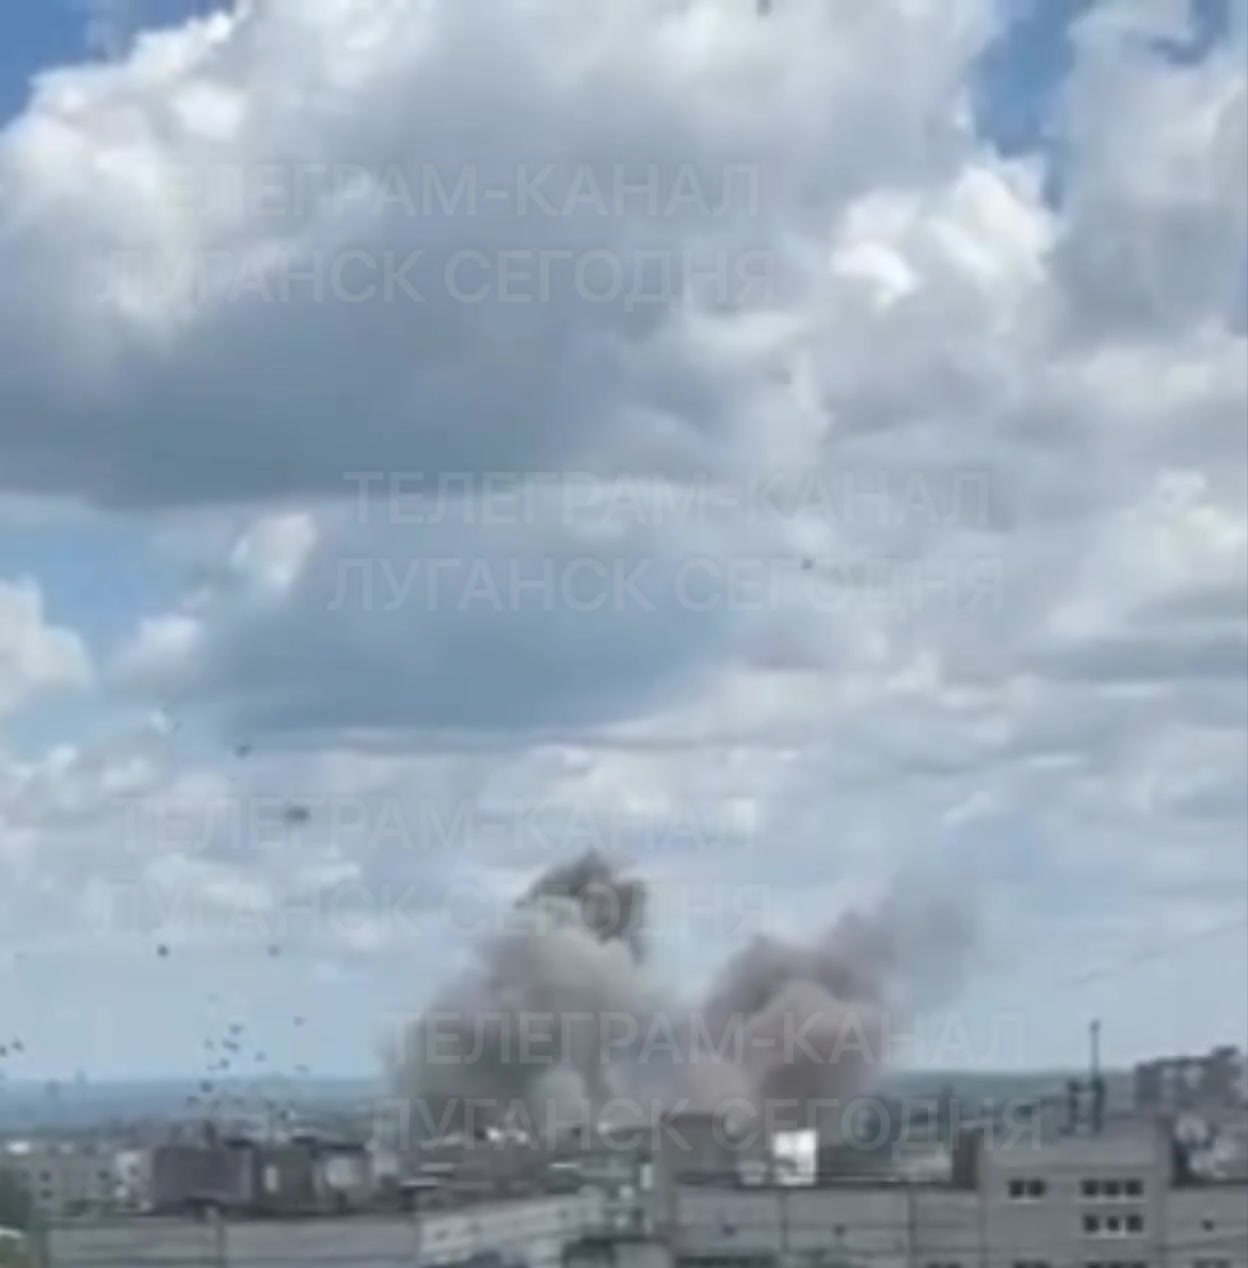 Raketaanvallen in Loehansk